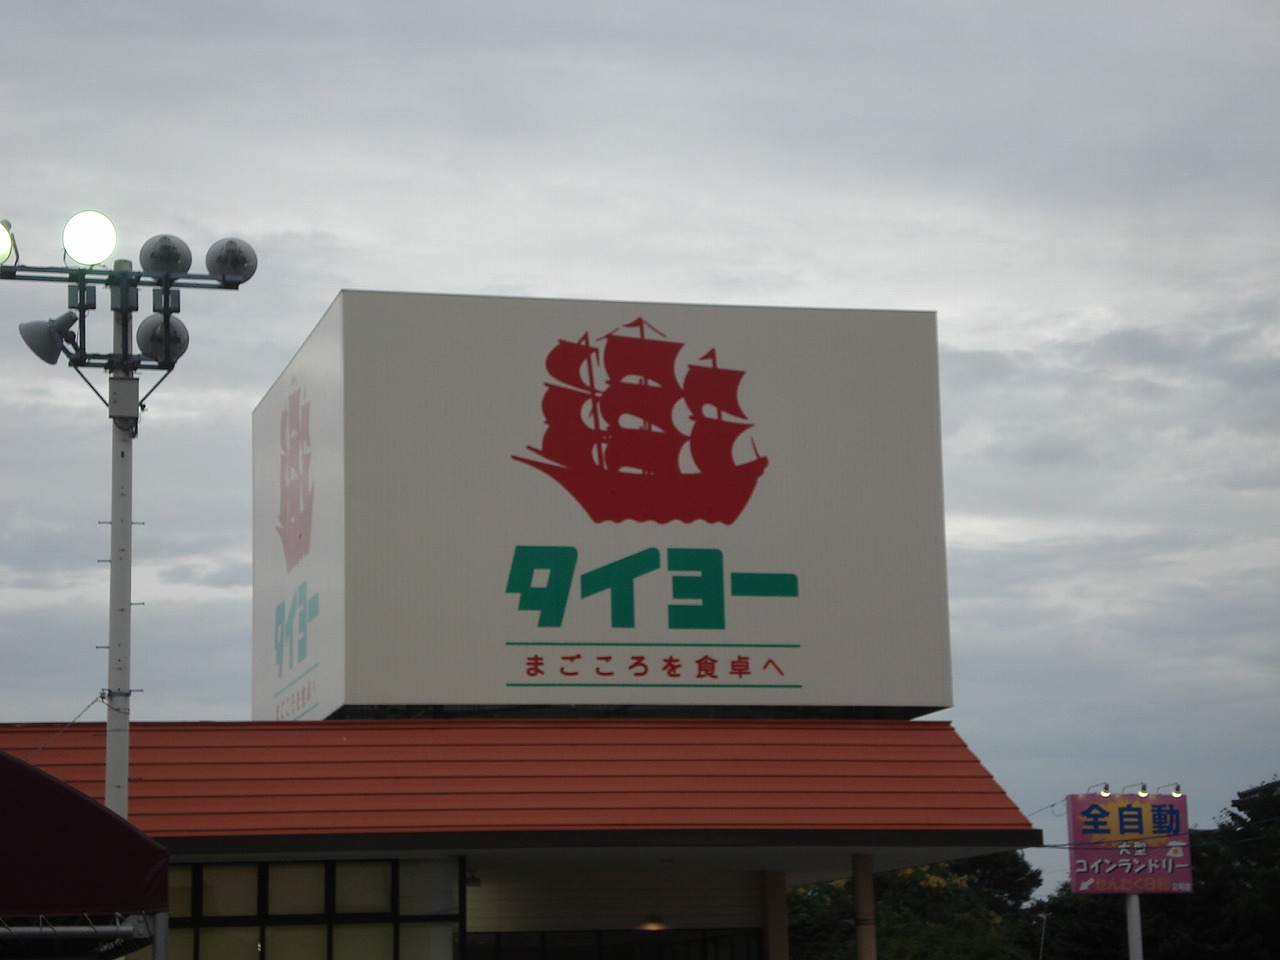 Supermarket. 1127m until Super Taiyo Chiba store (Super)